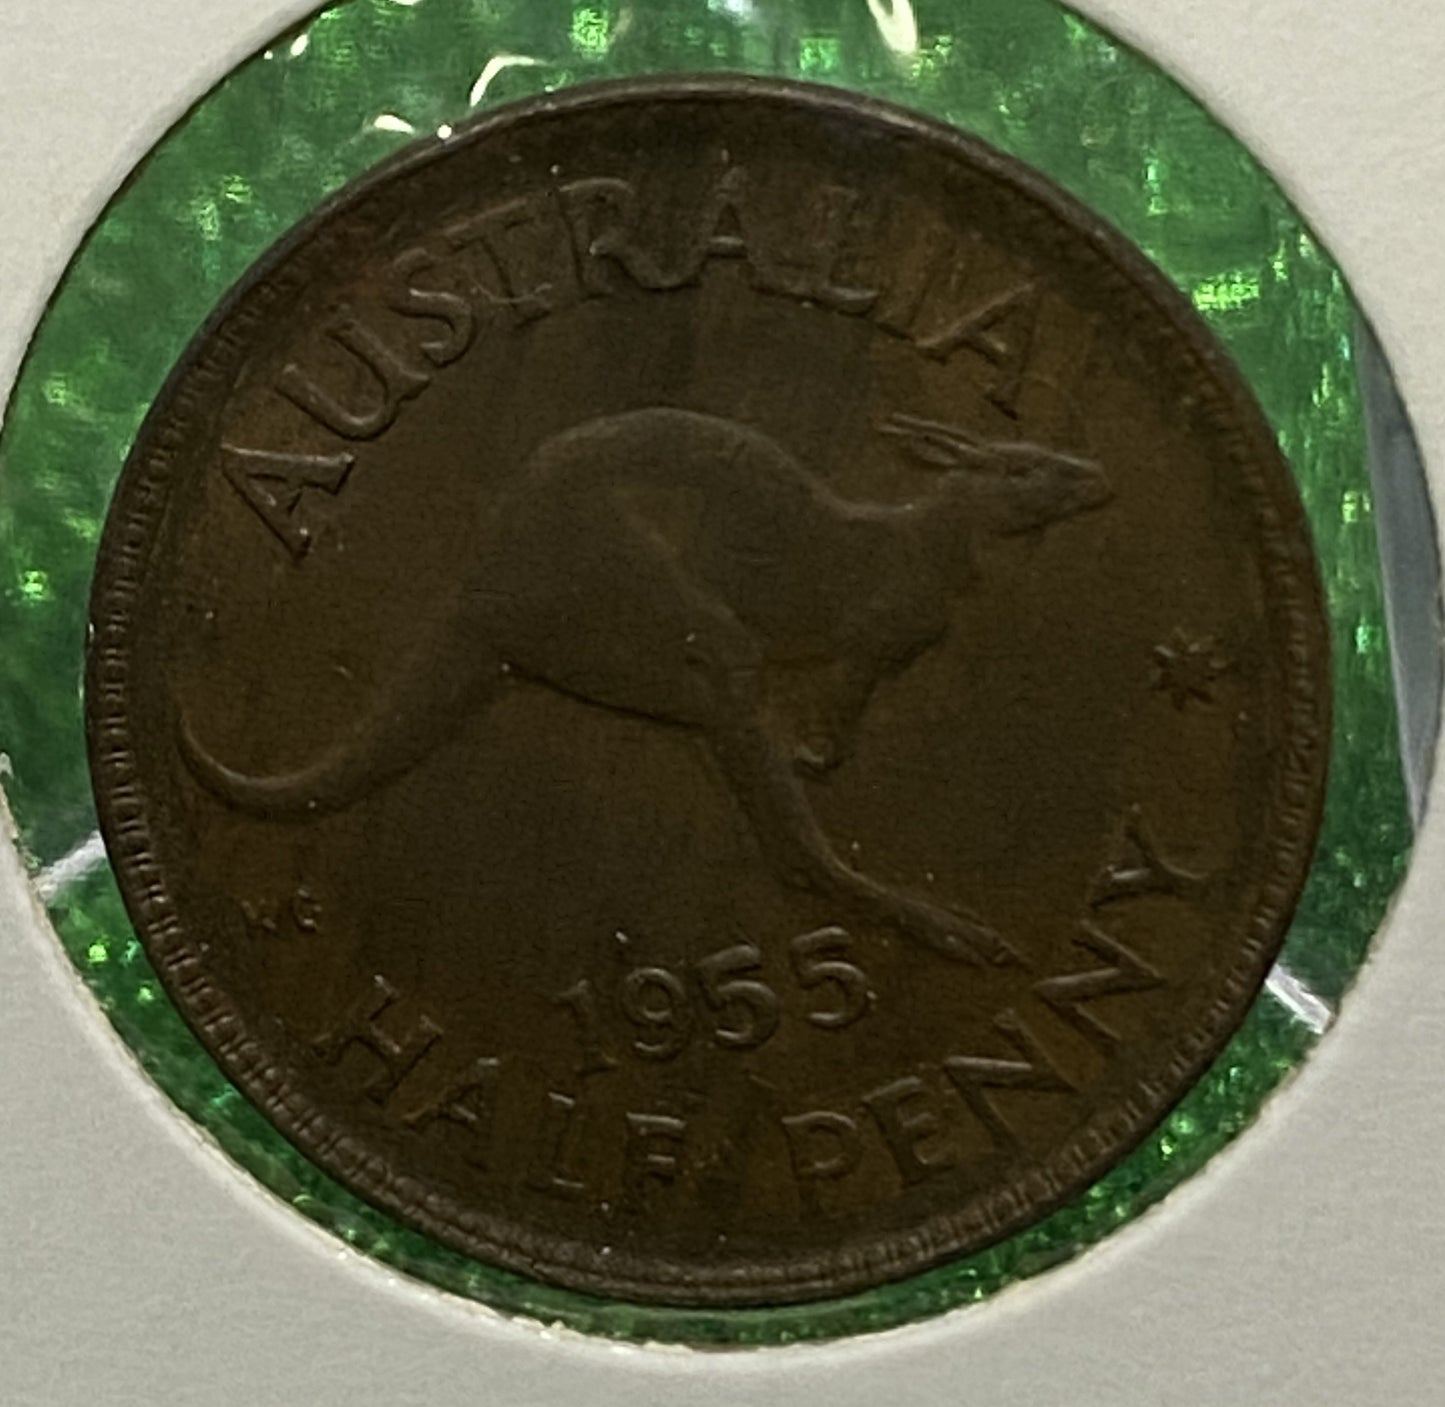 Australian HALF PENNY COIN 1955 Queen Elizabeth VG/F CONDITION